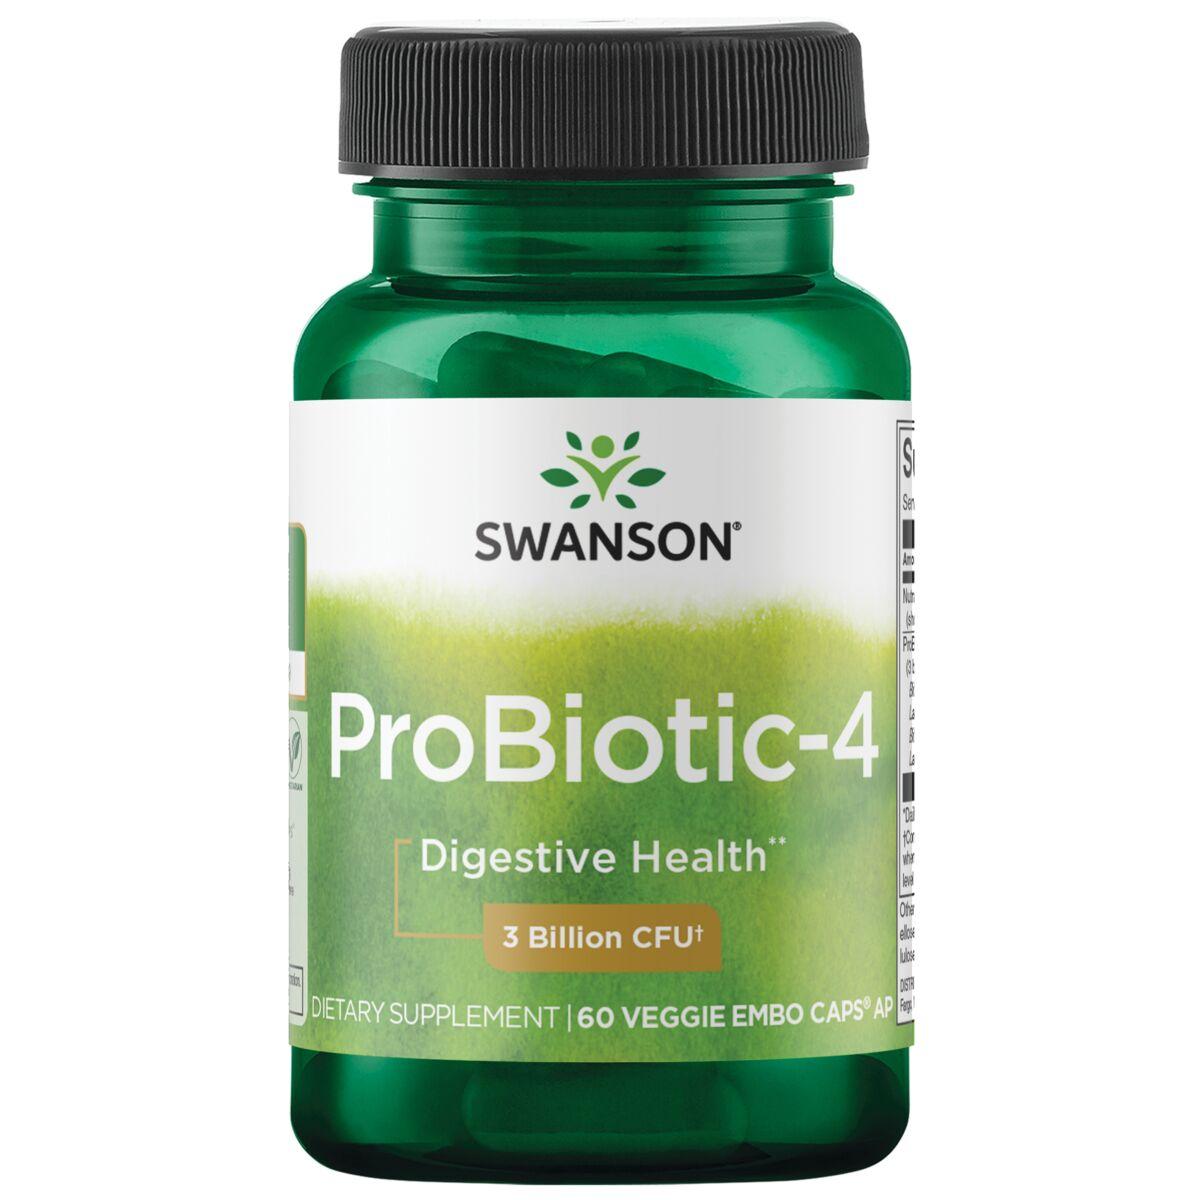 Swanson Probiotics Probiotic-4 Supplement Vitamin | 3 Billion CFU | 60 Veg Caps